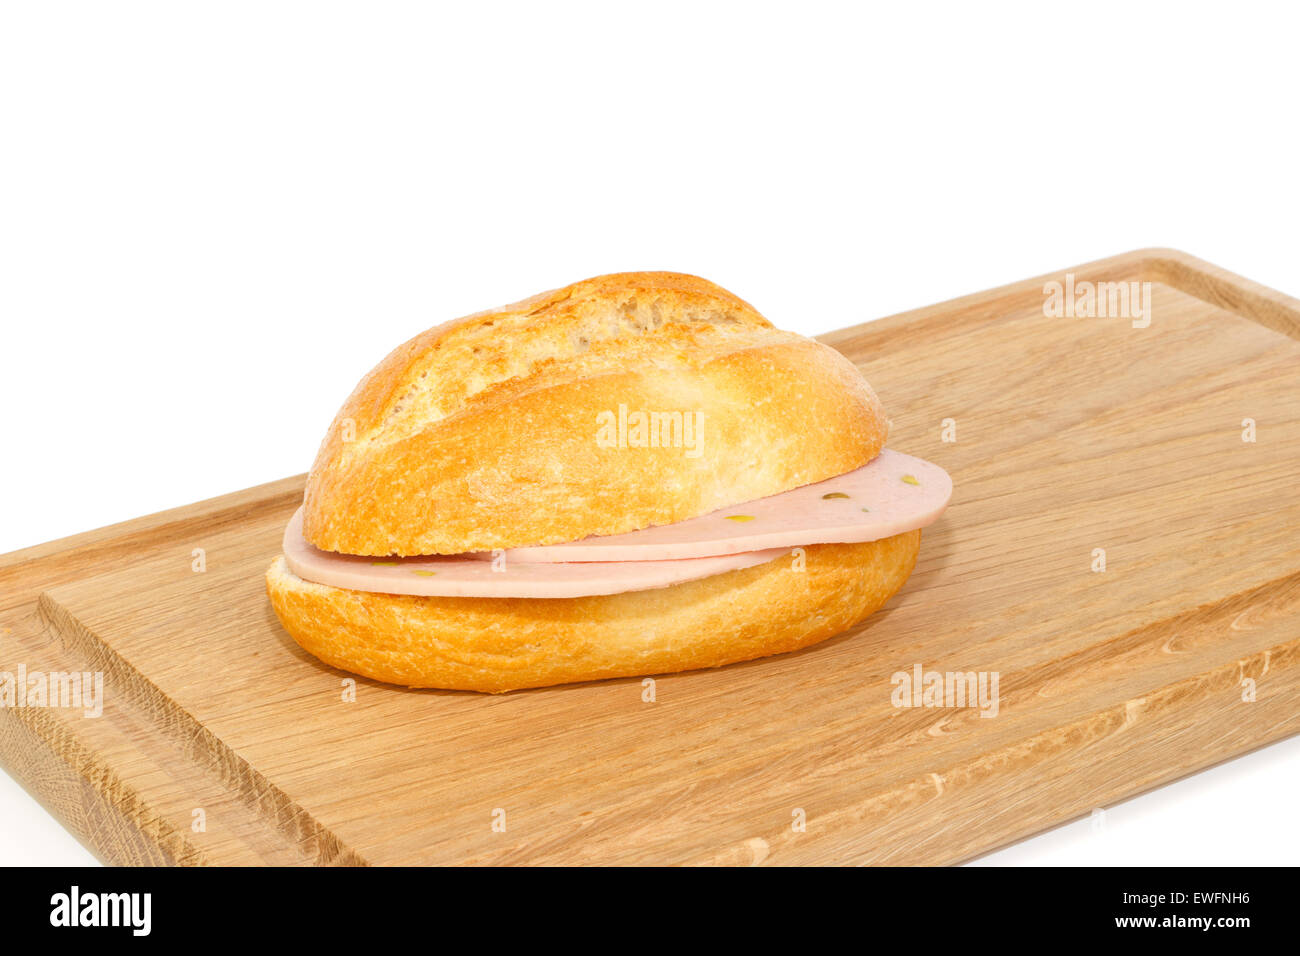 L'allemand de pain avec un petit-déjeuner sur la mortadelle en bois bac contre fond blanc Banque D'Images